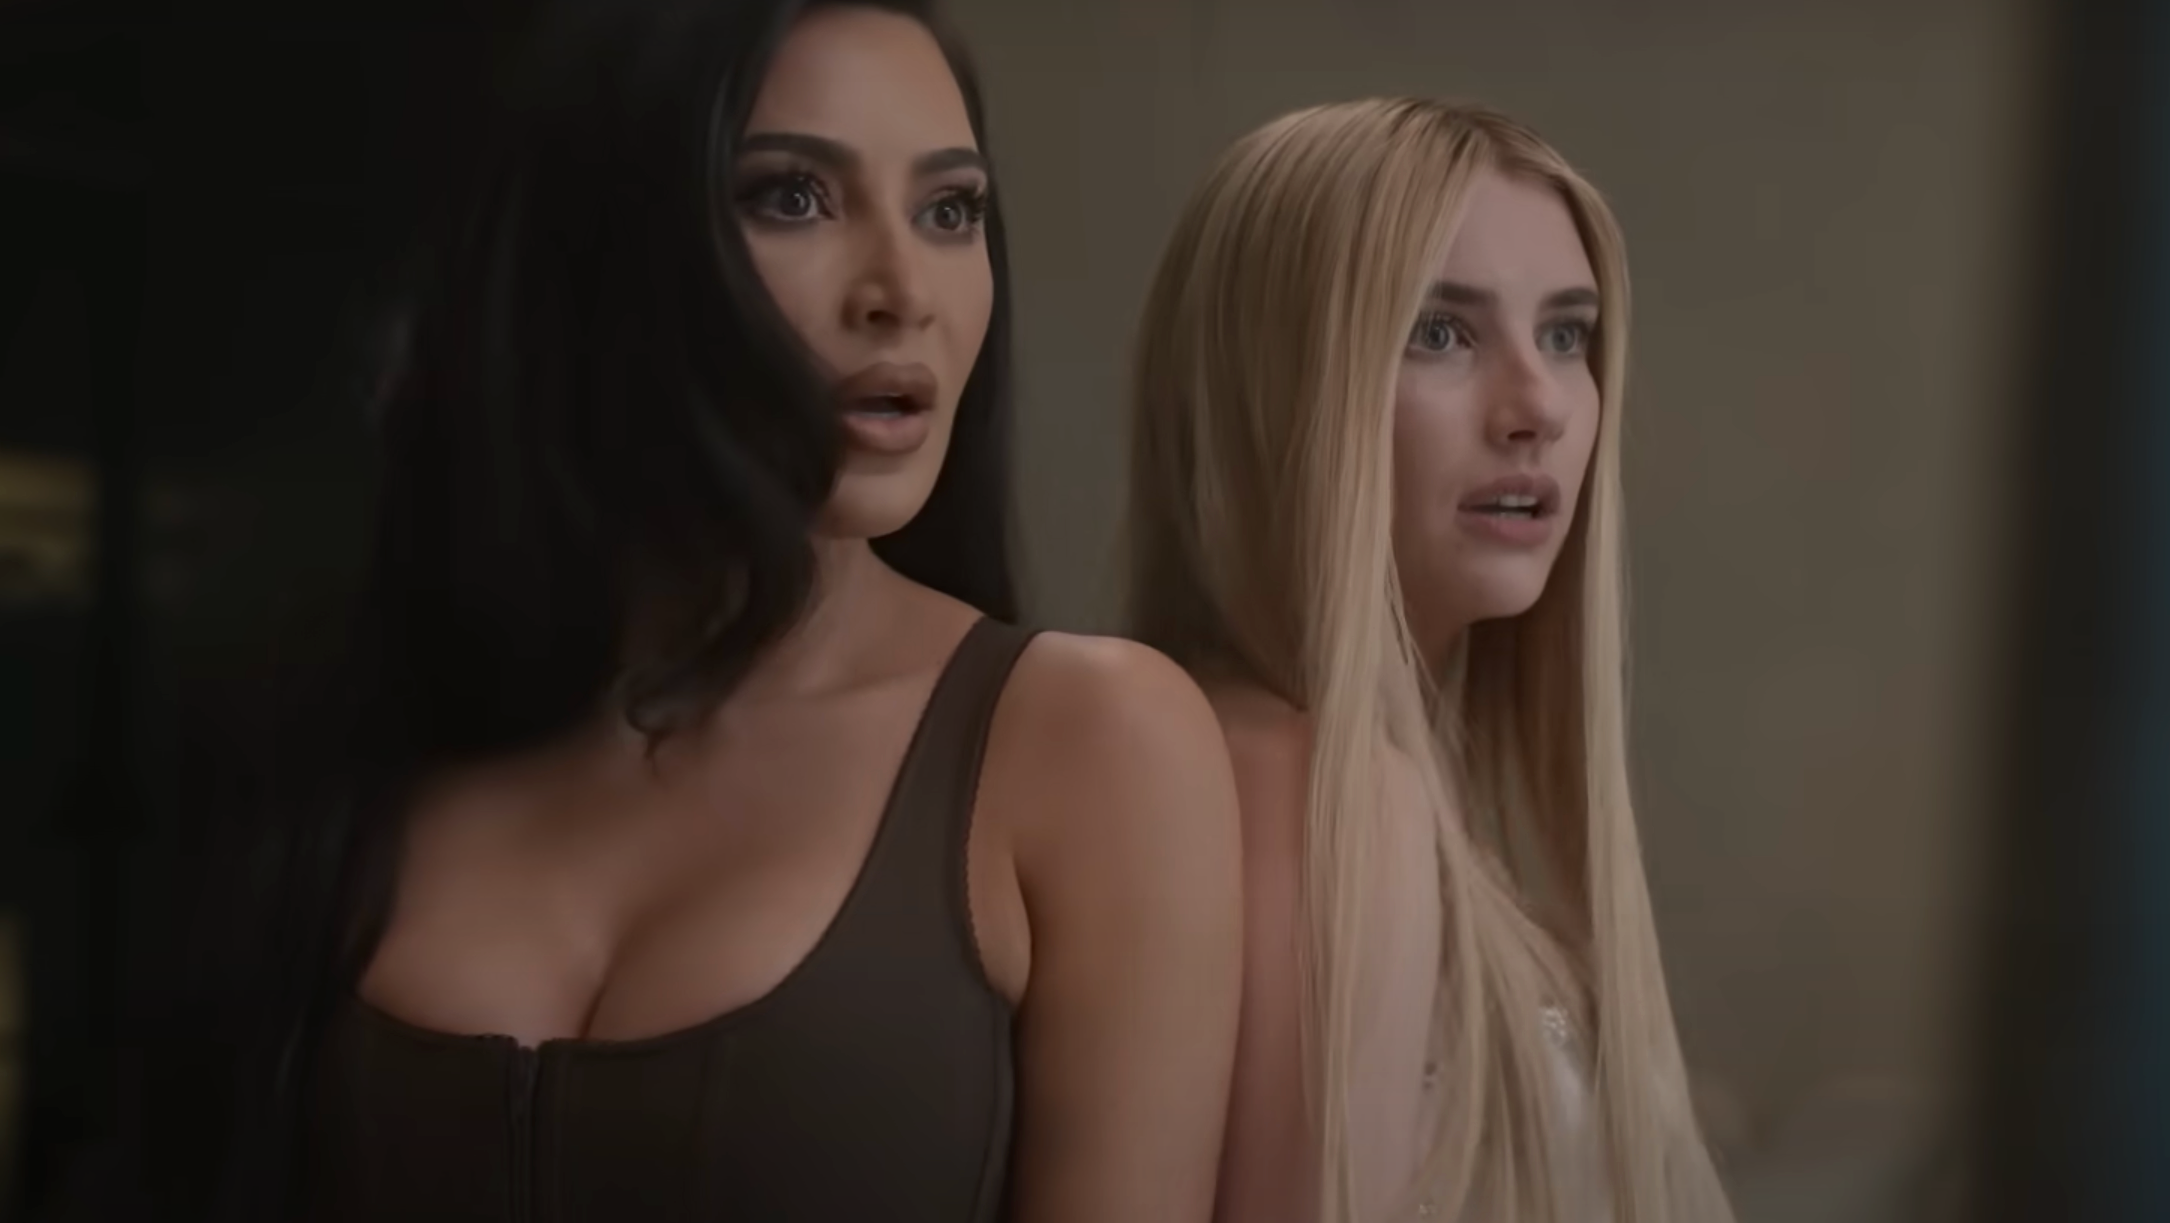 Kim Kardashian Says She Loves Starting Something New